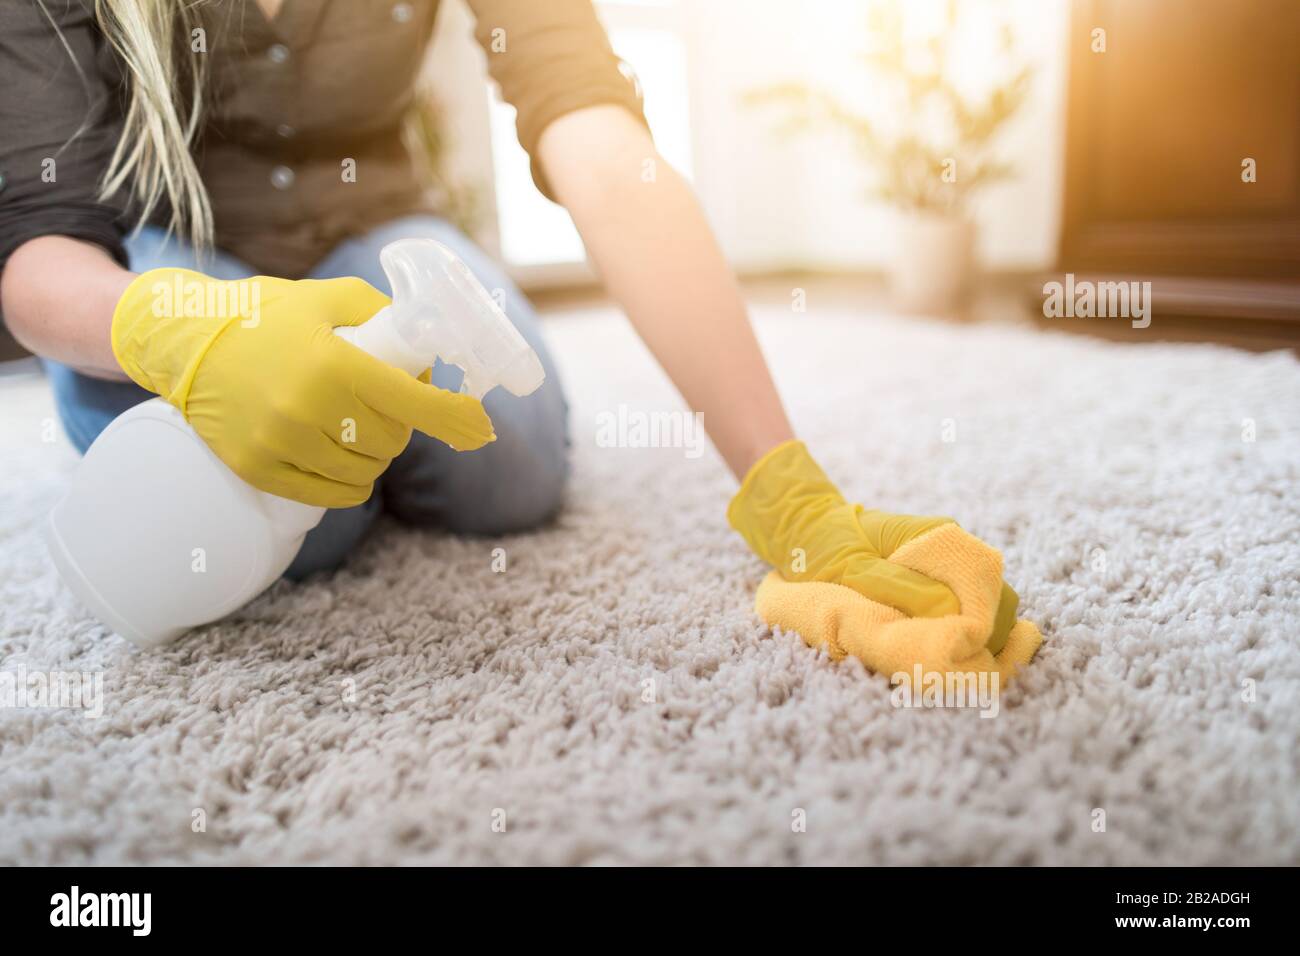 La casalinga pulendo il tappeto con la spazzola e facendo il lavoro di casa. Foto Stock